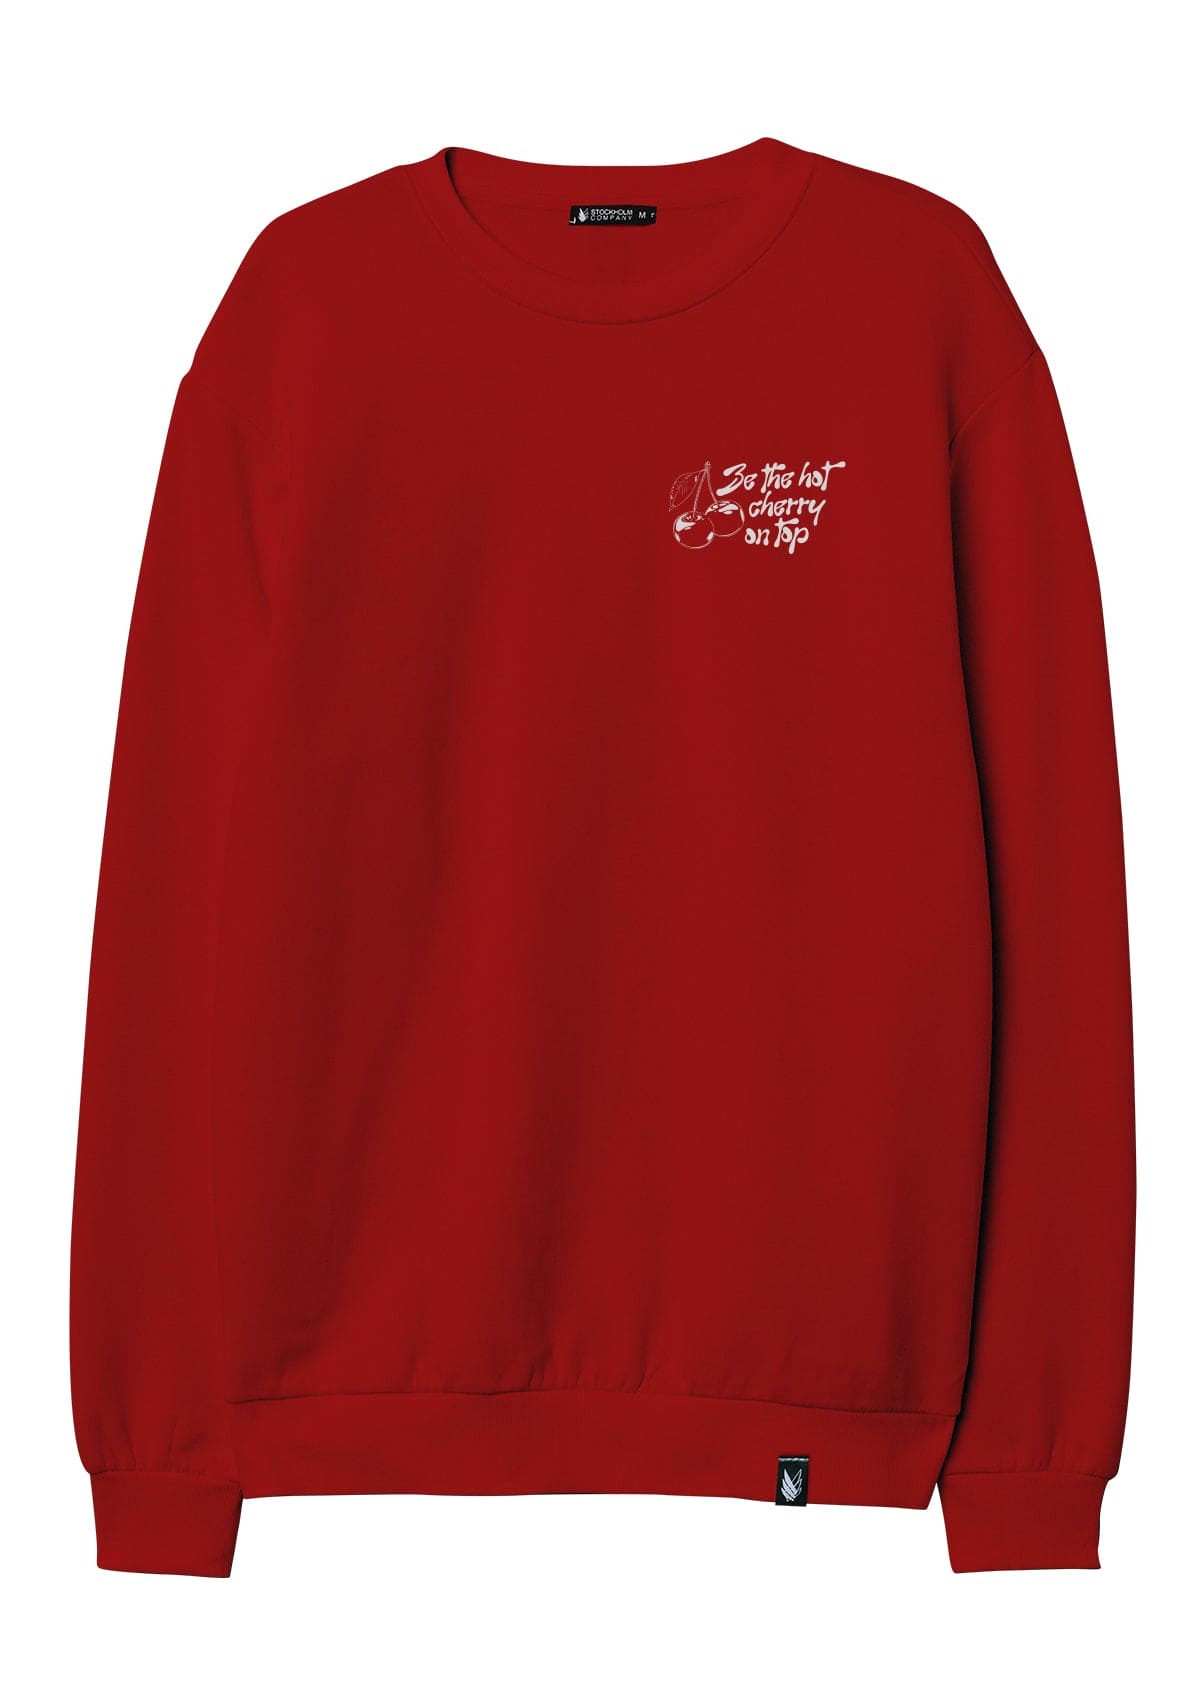 Hot cherry - Sweatshirt